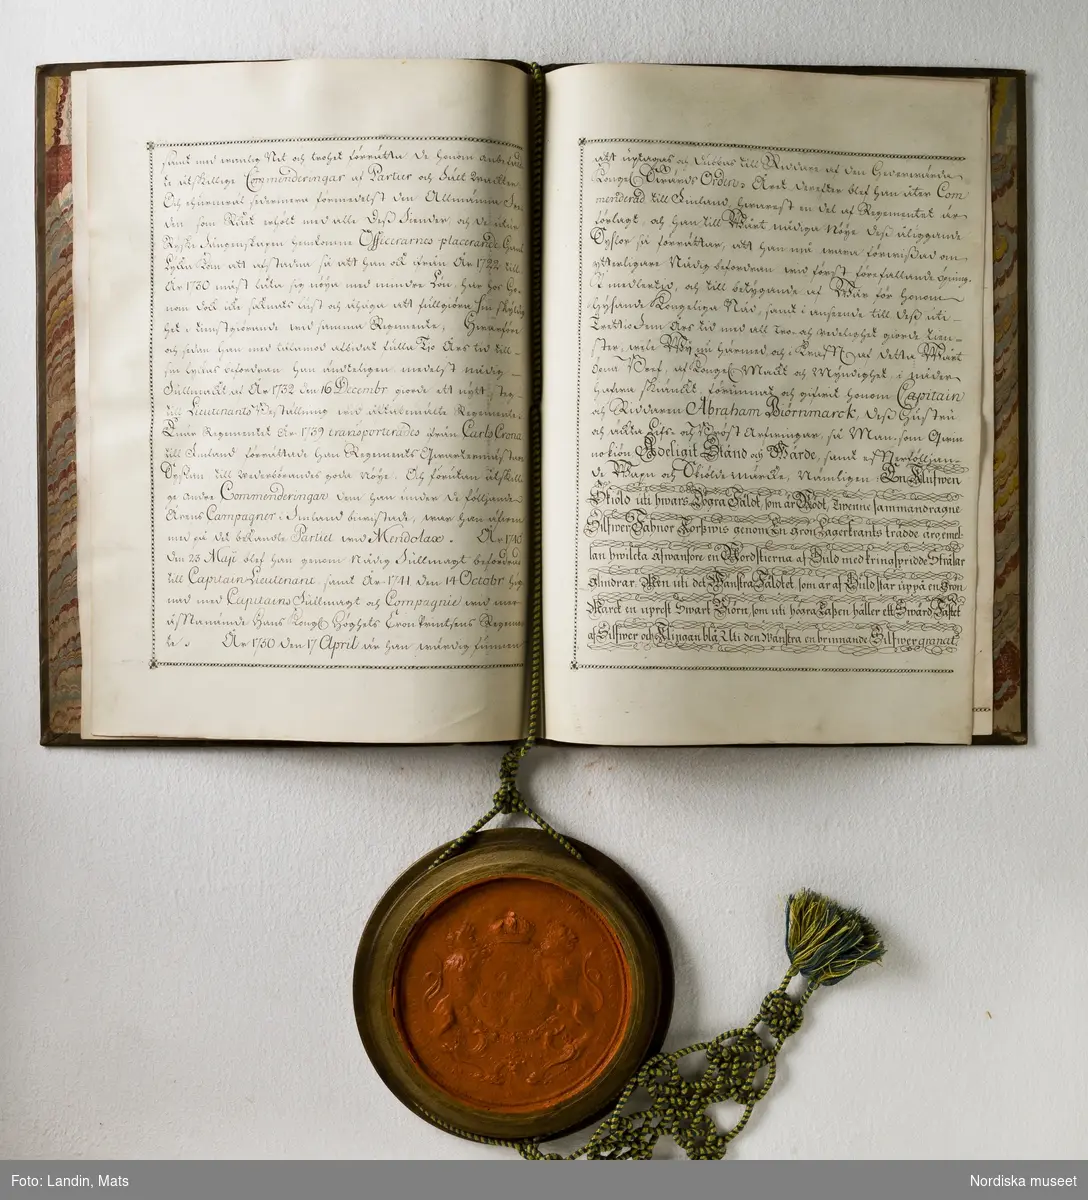 Adelsbrev för kapten Abraham von Björnmarck signerat 1751 av Adolf Fredrik. Sköldebrev. Fyra pergamentsblad, brunt skinnband med guldprägling. Sigill i träkapsel.